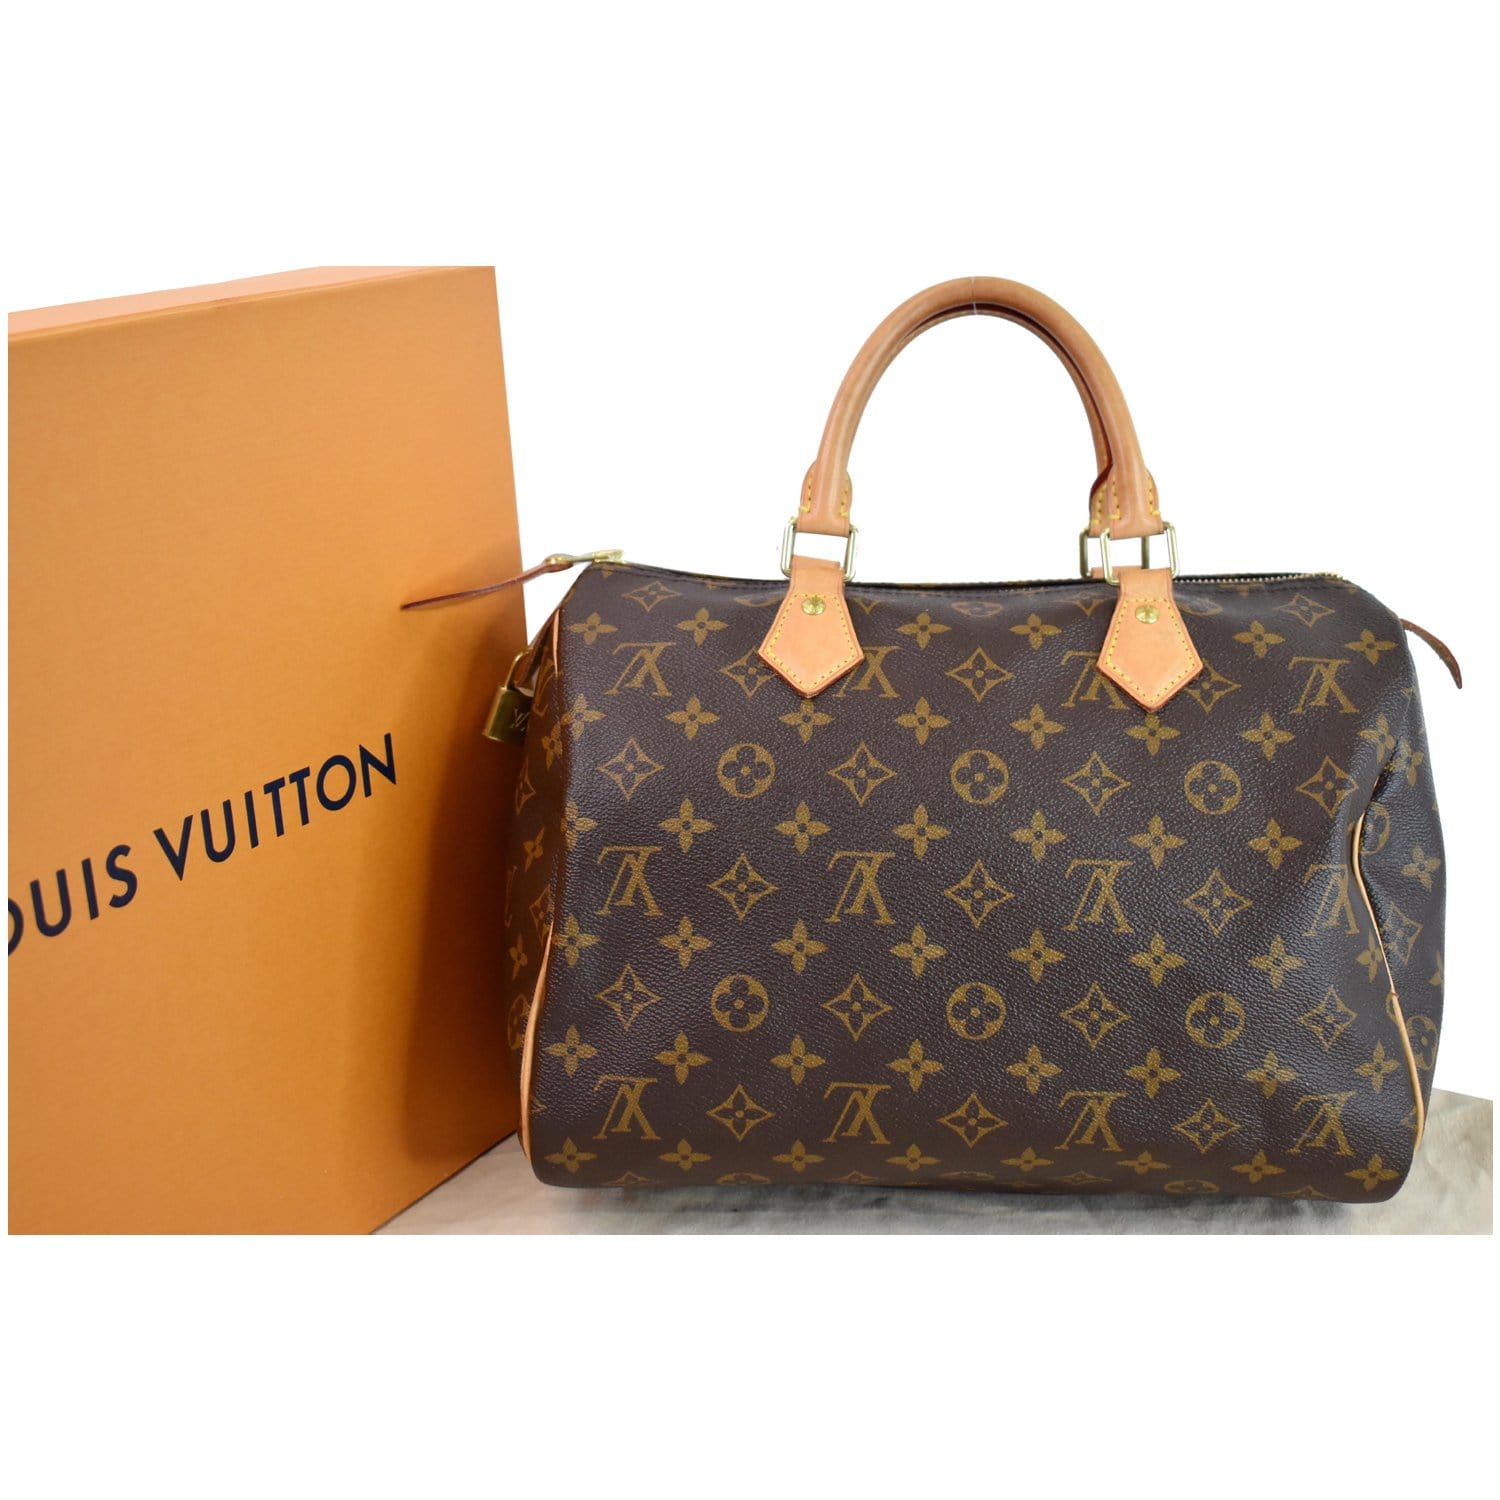 Louis Vuitton Louis Vuitton Speedy 30 Monogram Canvas Handbag